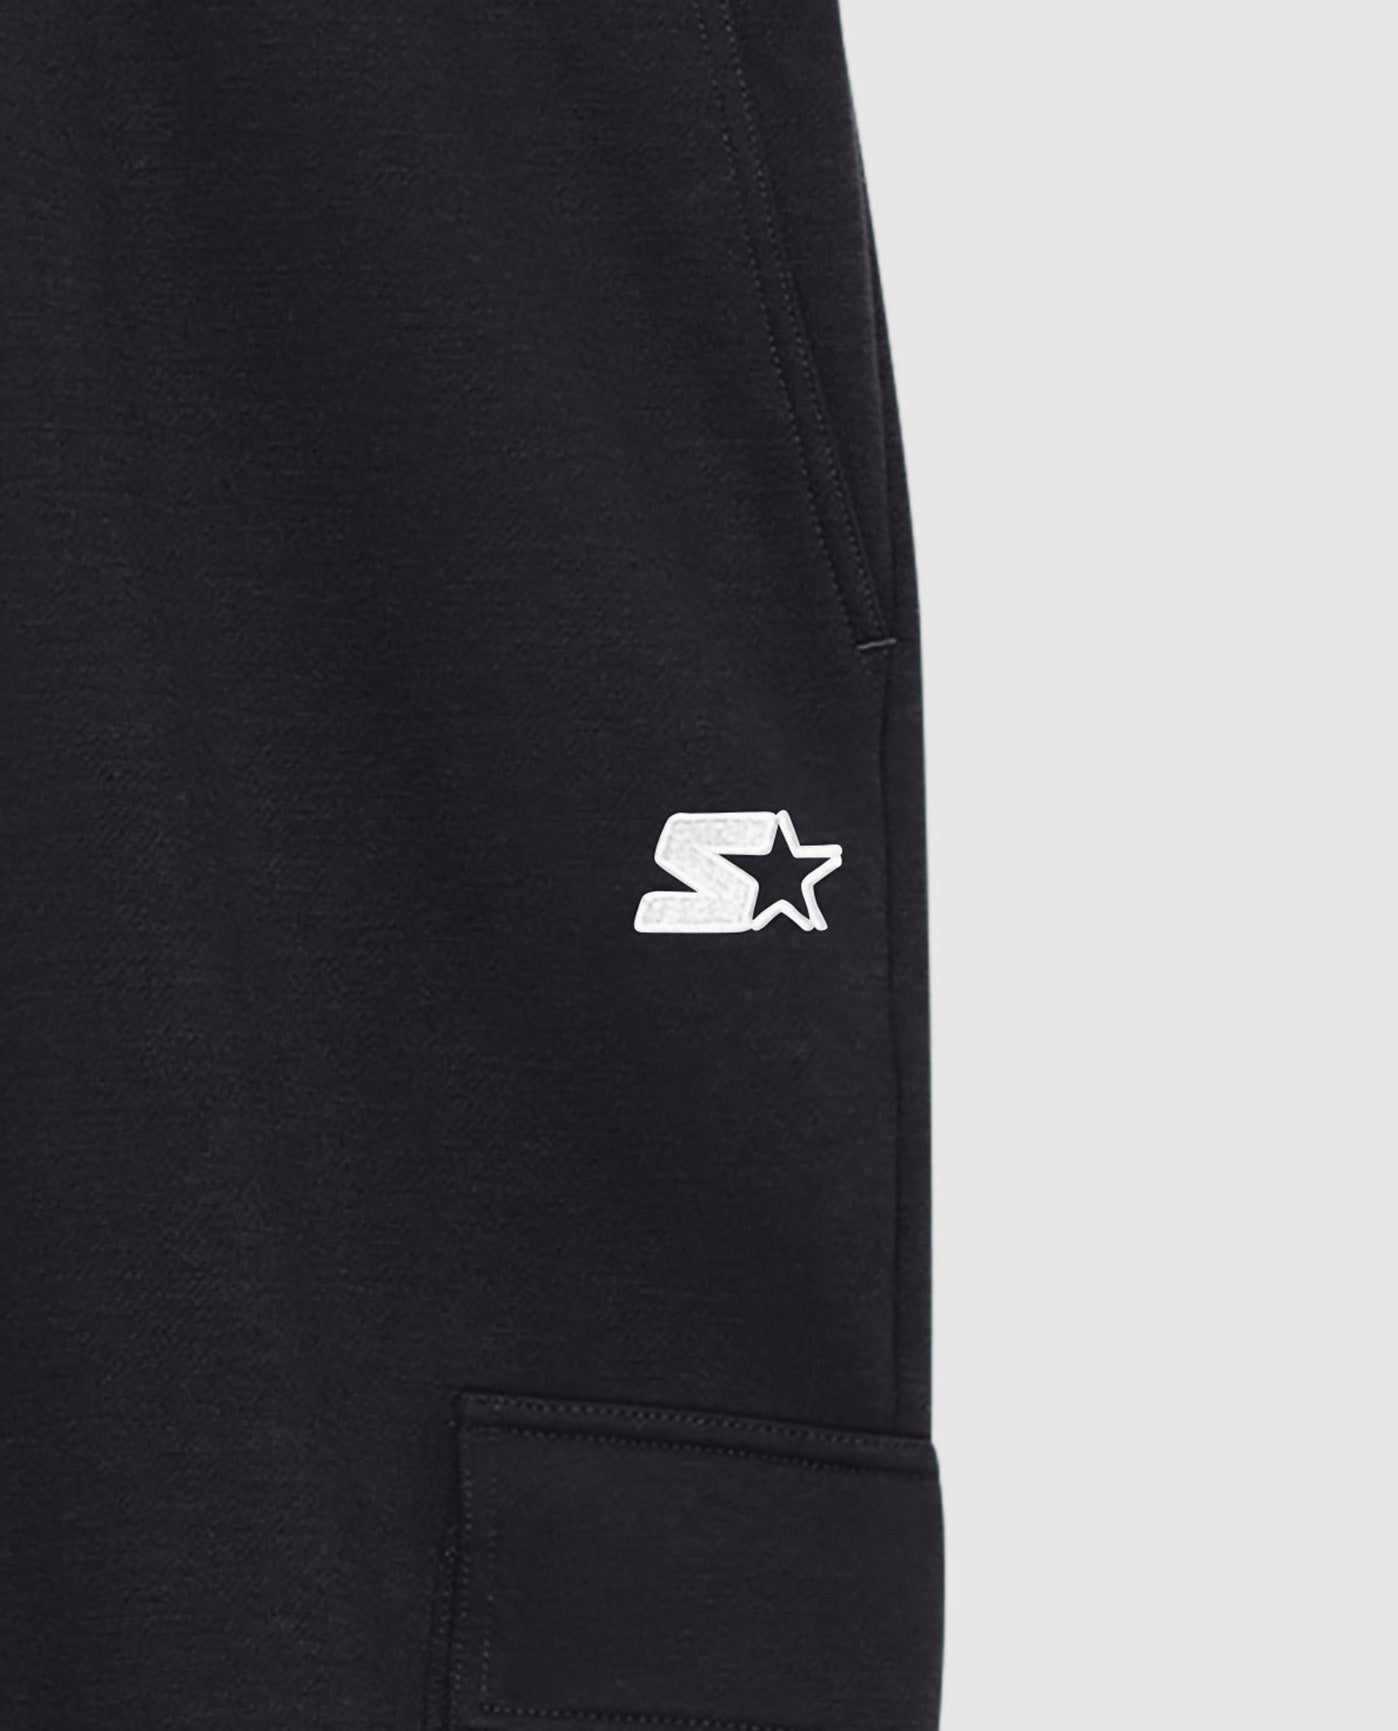 Embroidered Starter Logo on Starter Kyle Jogger with Cargo Pockets Black | Black